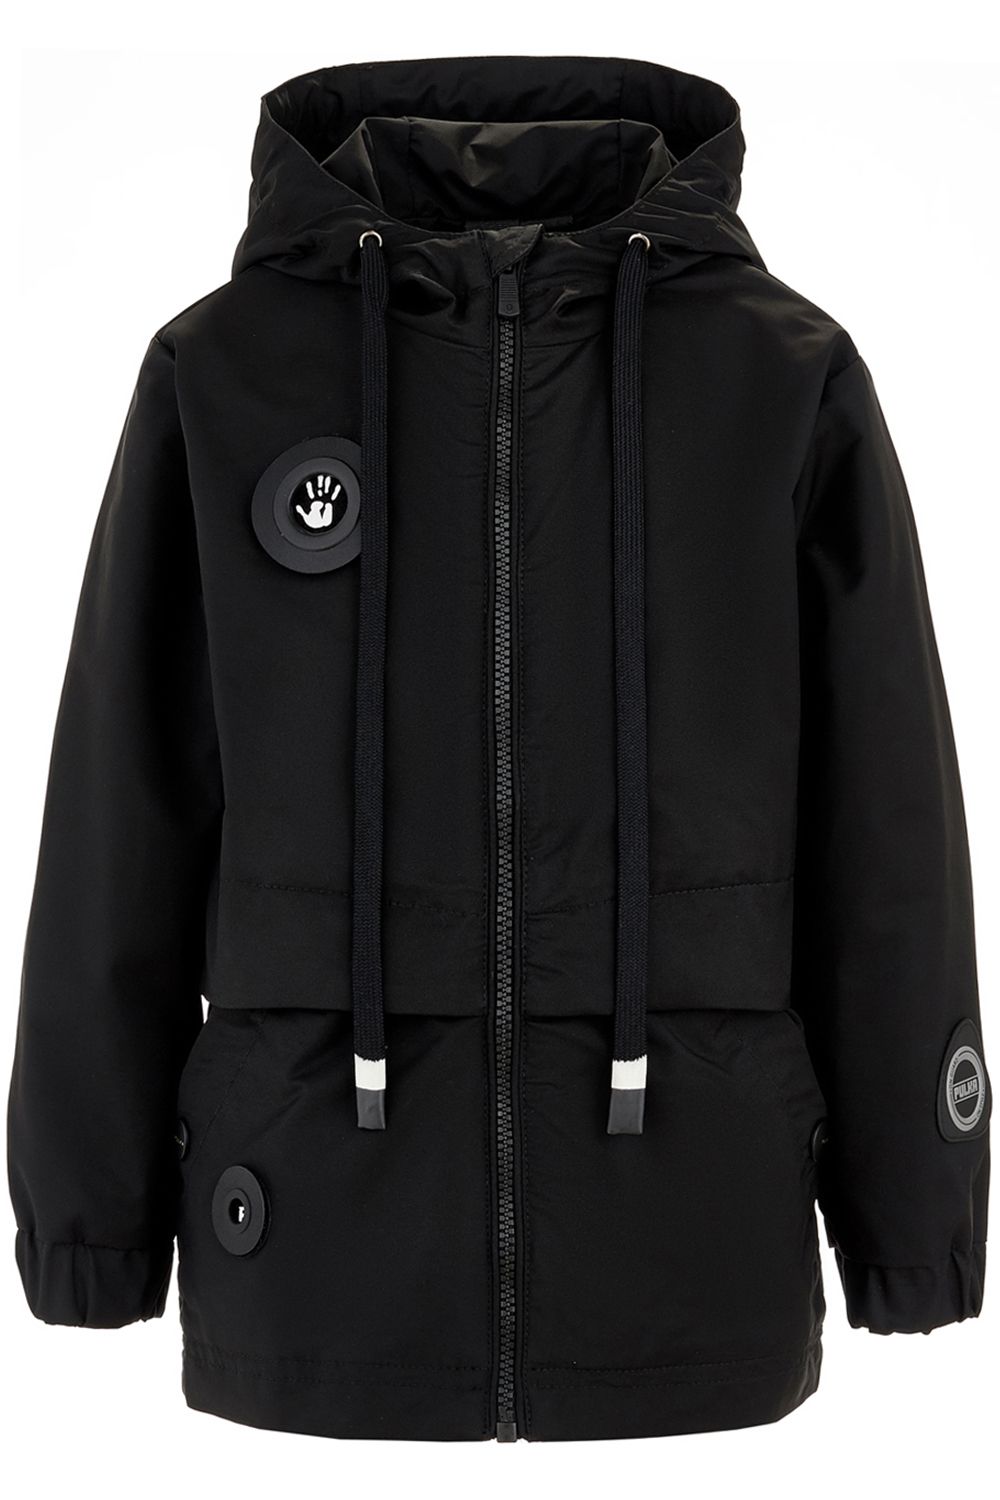 Куртка Pulka, размер 104, цвет черный PUFSB-916-10808-101 - фото 1